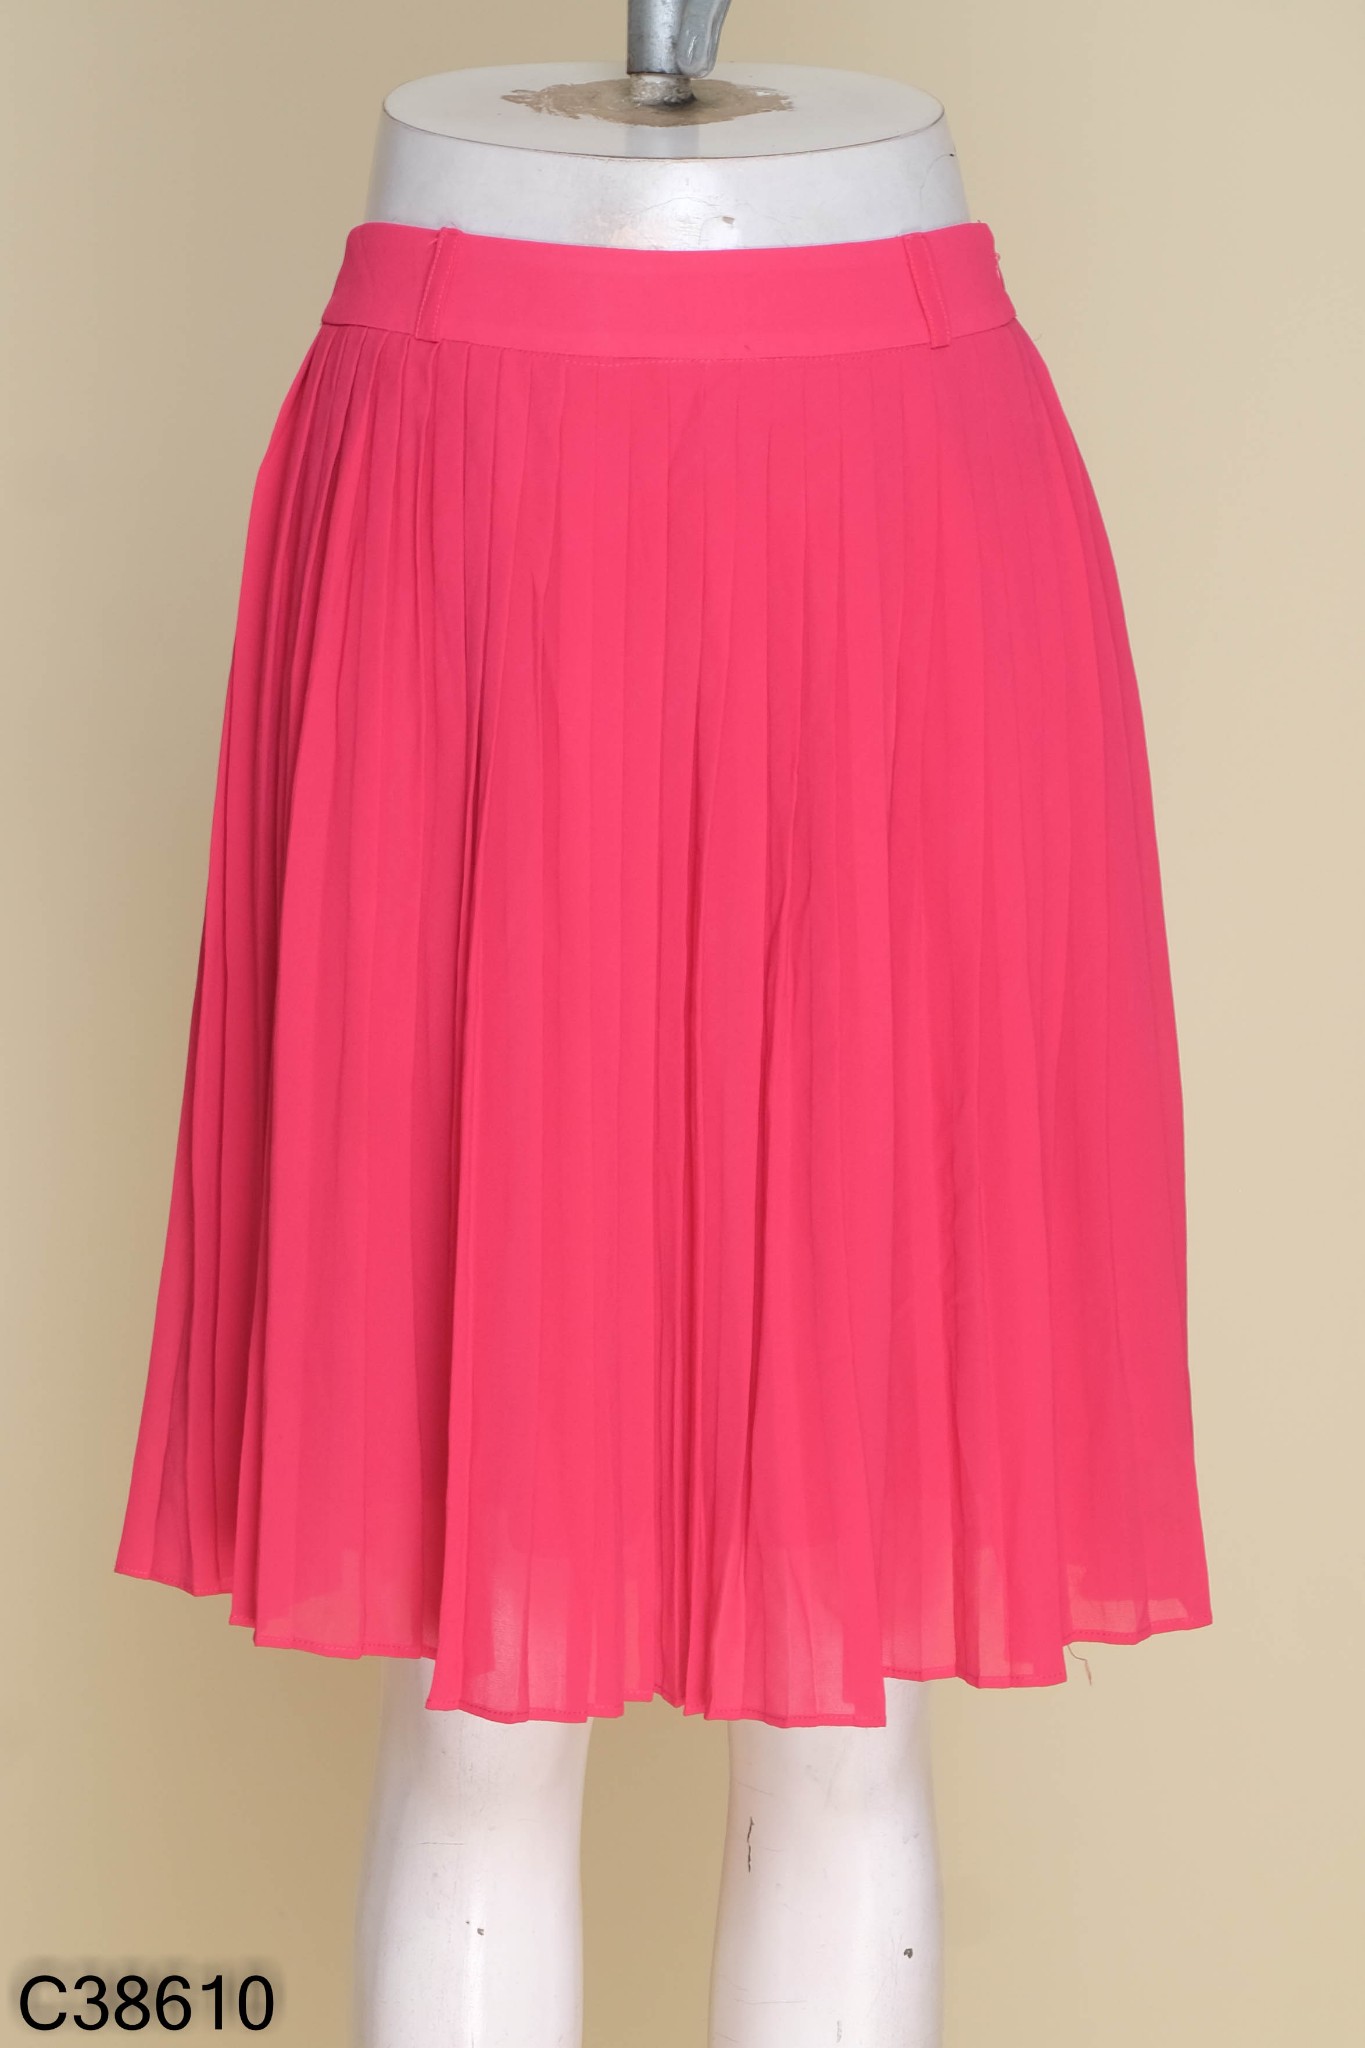 Đầm xòe lệch vai màu hồng xếp ly - ANN.COM.VN